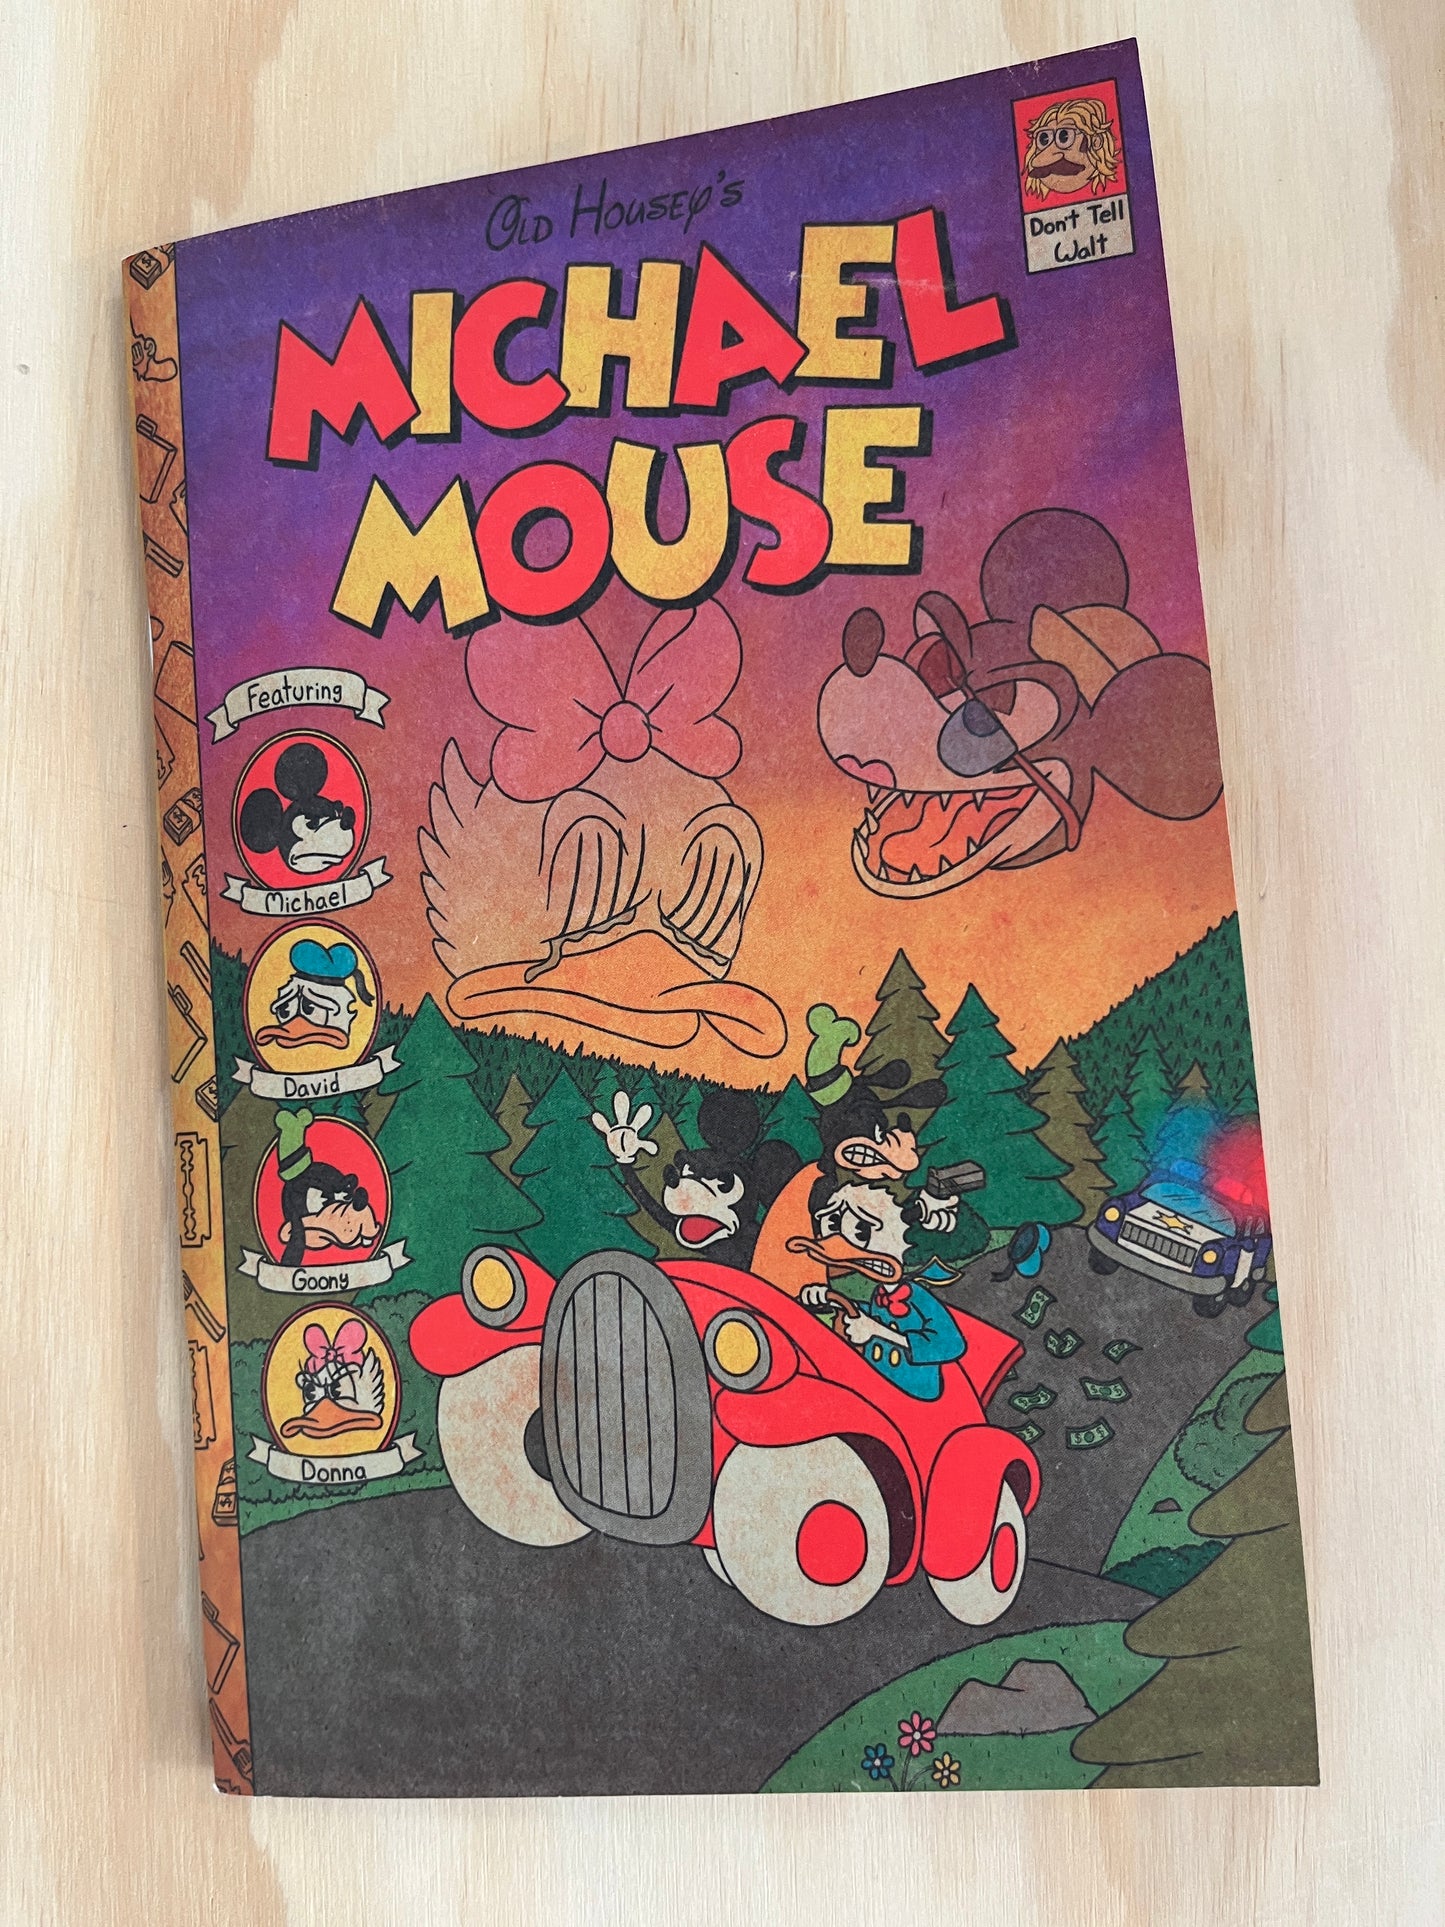 Michael Mouse